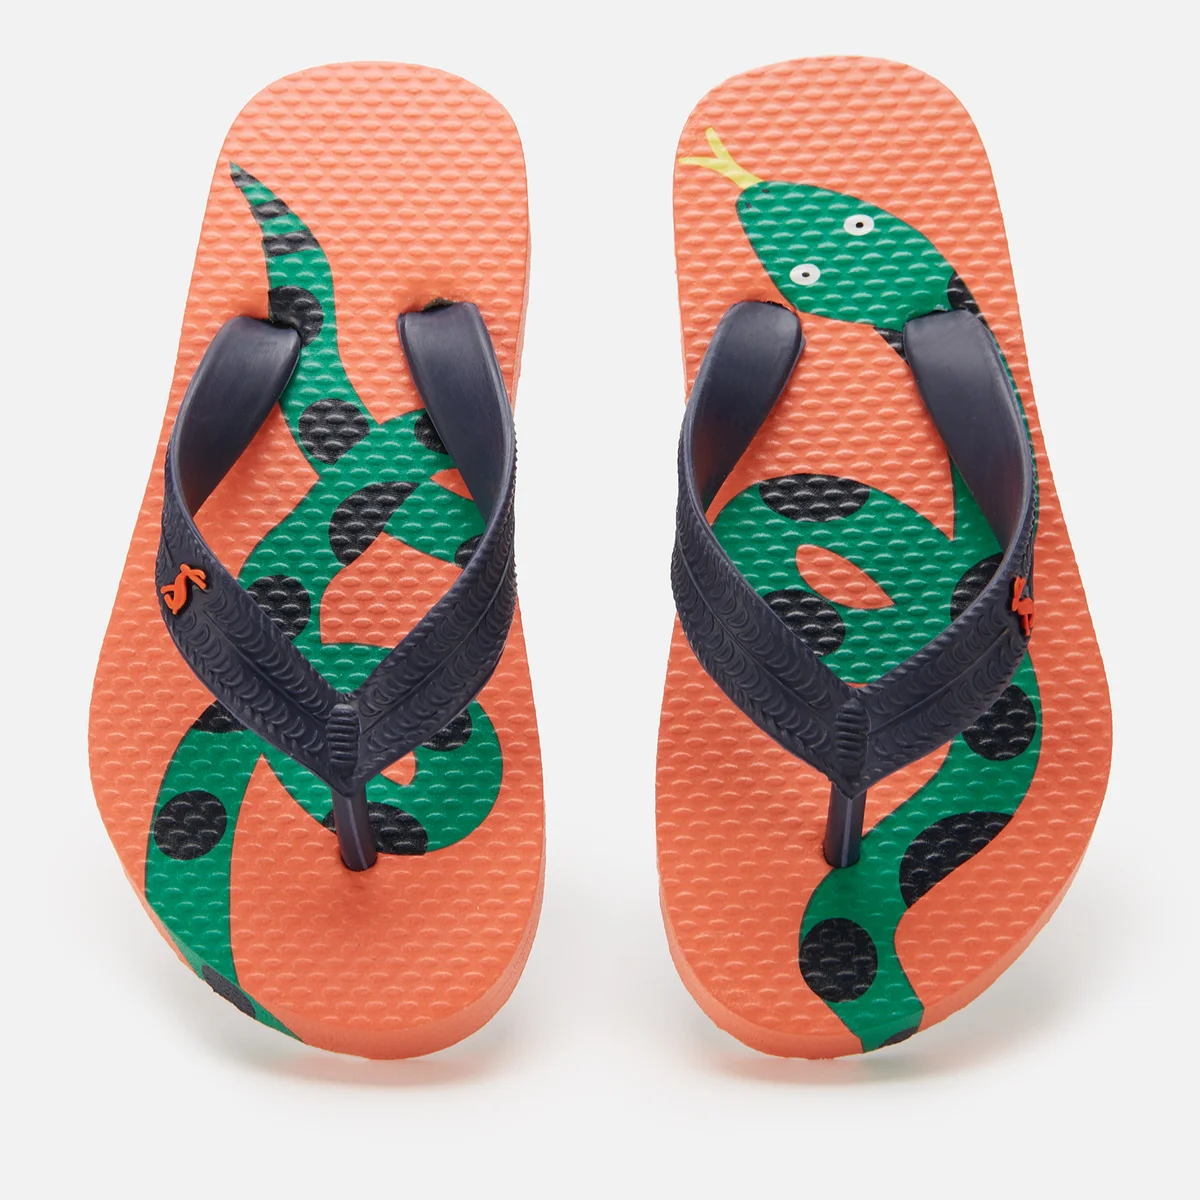 Joules Kids' Lightweight Summer Sandals - Orange Snake Image 1